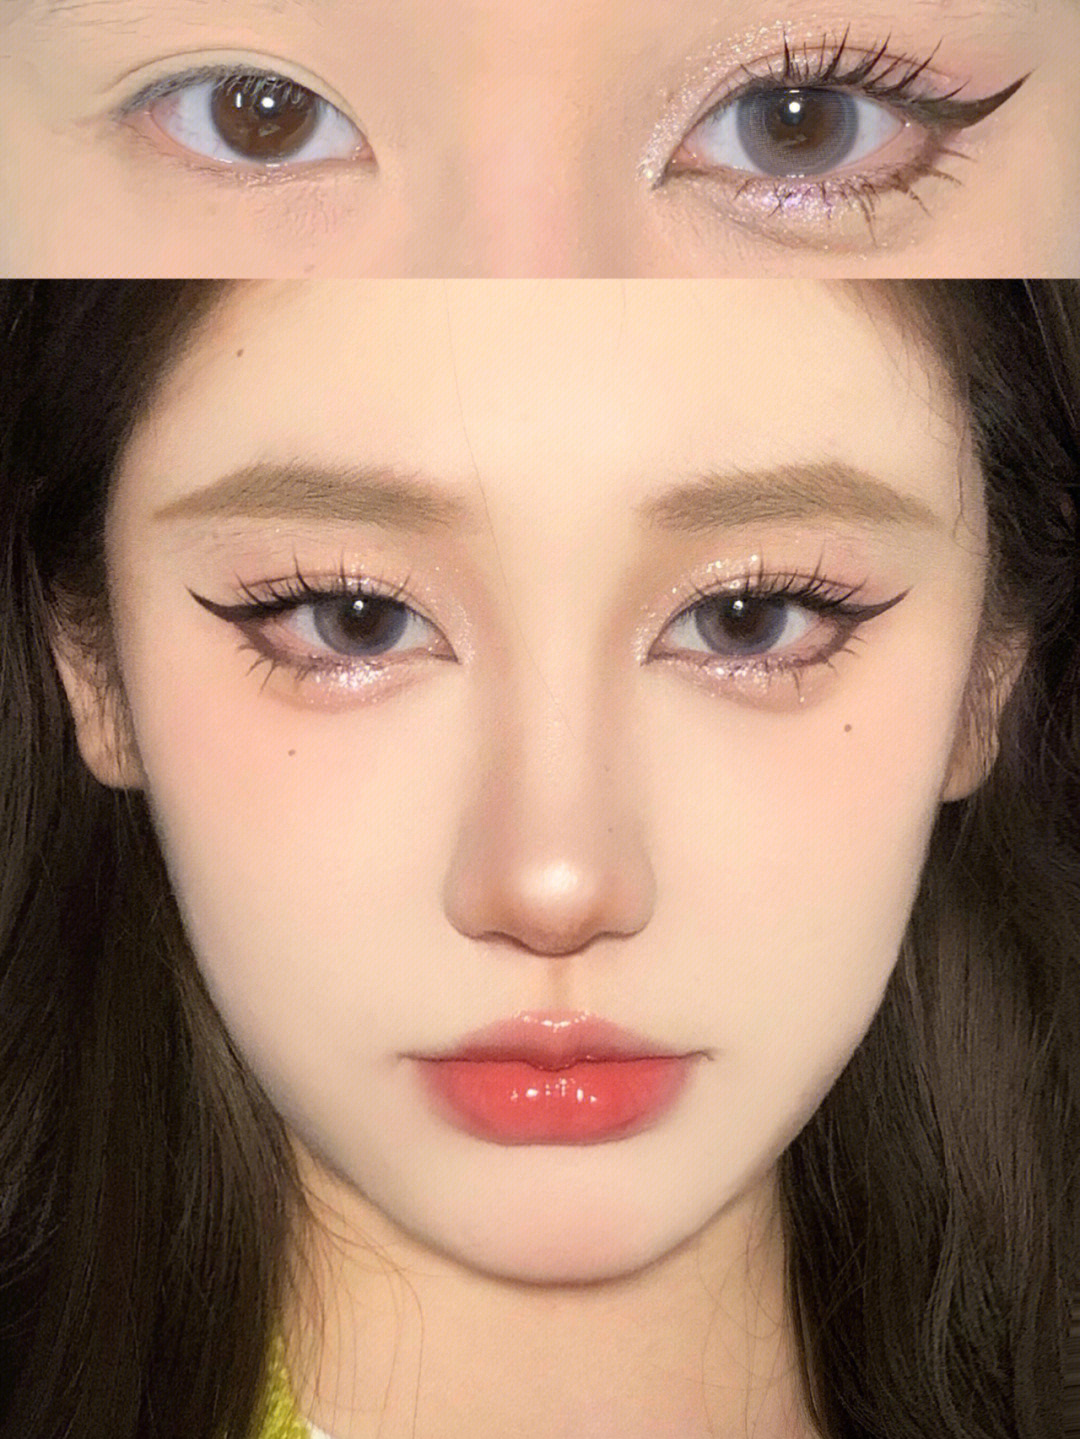 染眉膏是kissme的 双眼皮贴是素之然双眼皮贴单面m款 假睫毛是pink